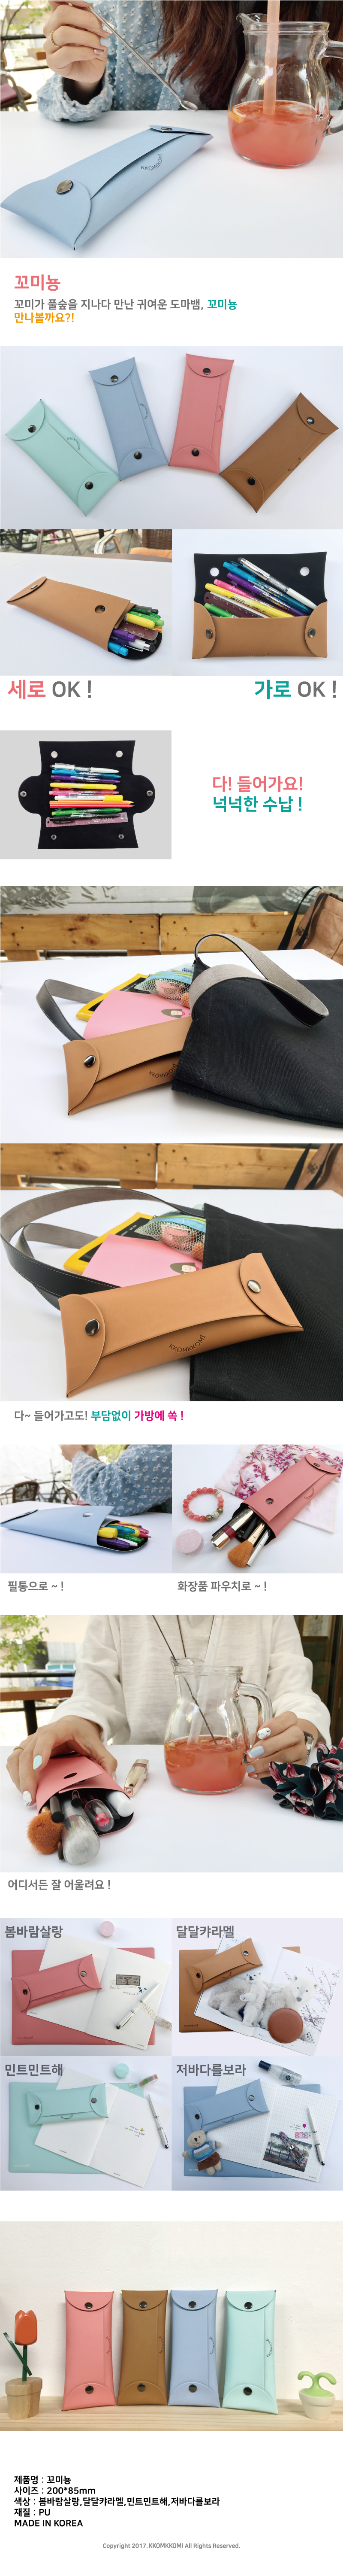 꼬미뇽 - 꼼꼬미, 6,900원, 가죽/합성피혁필통, 캐릭터